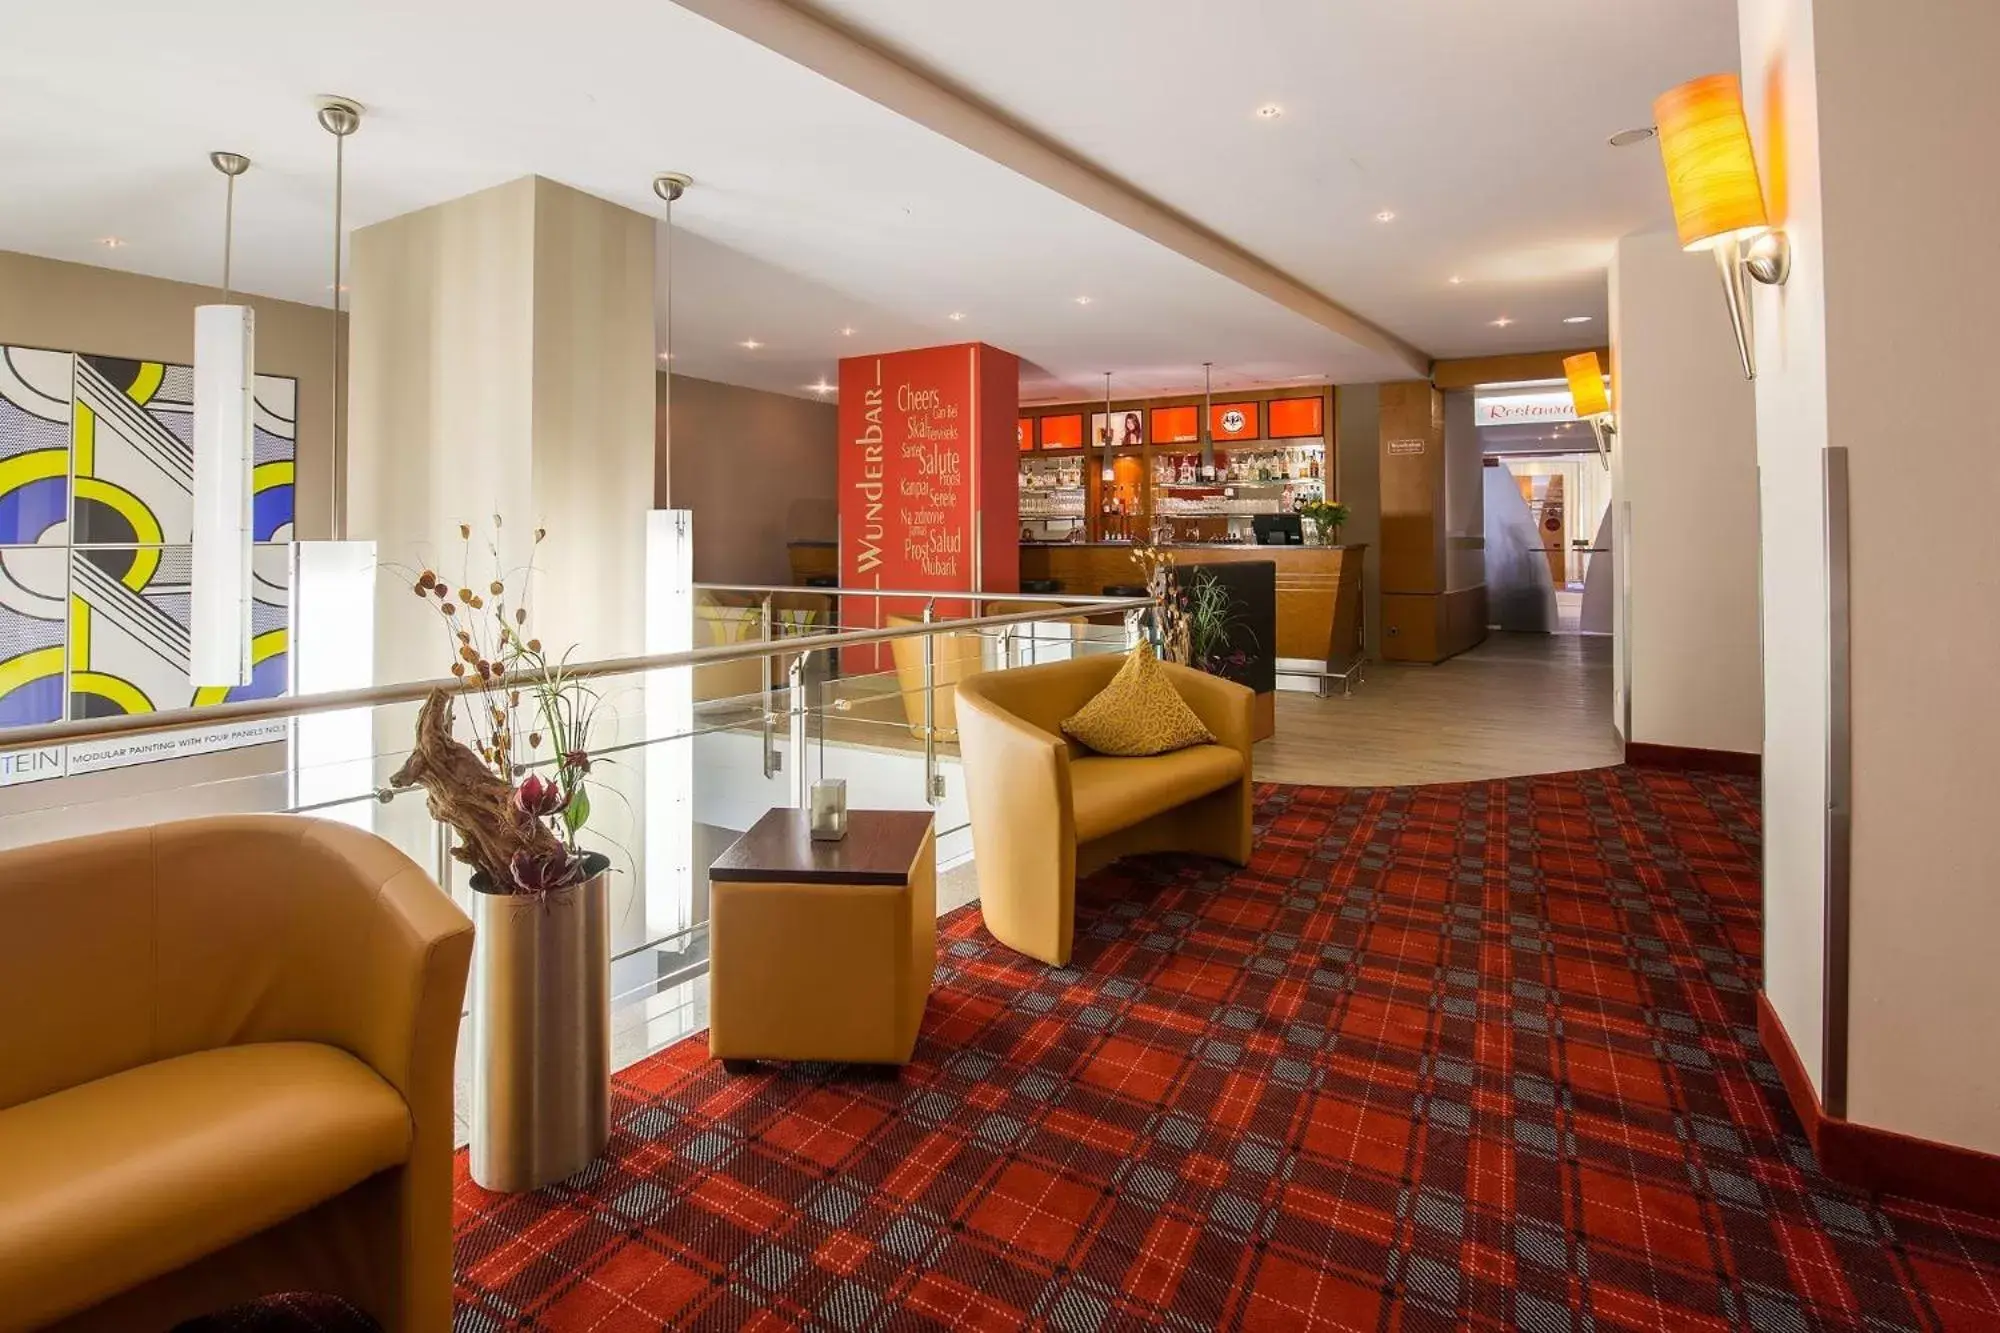 Lounge or bar, Lobby/Reception in Best Western Plus Hotel Bautzen